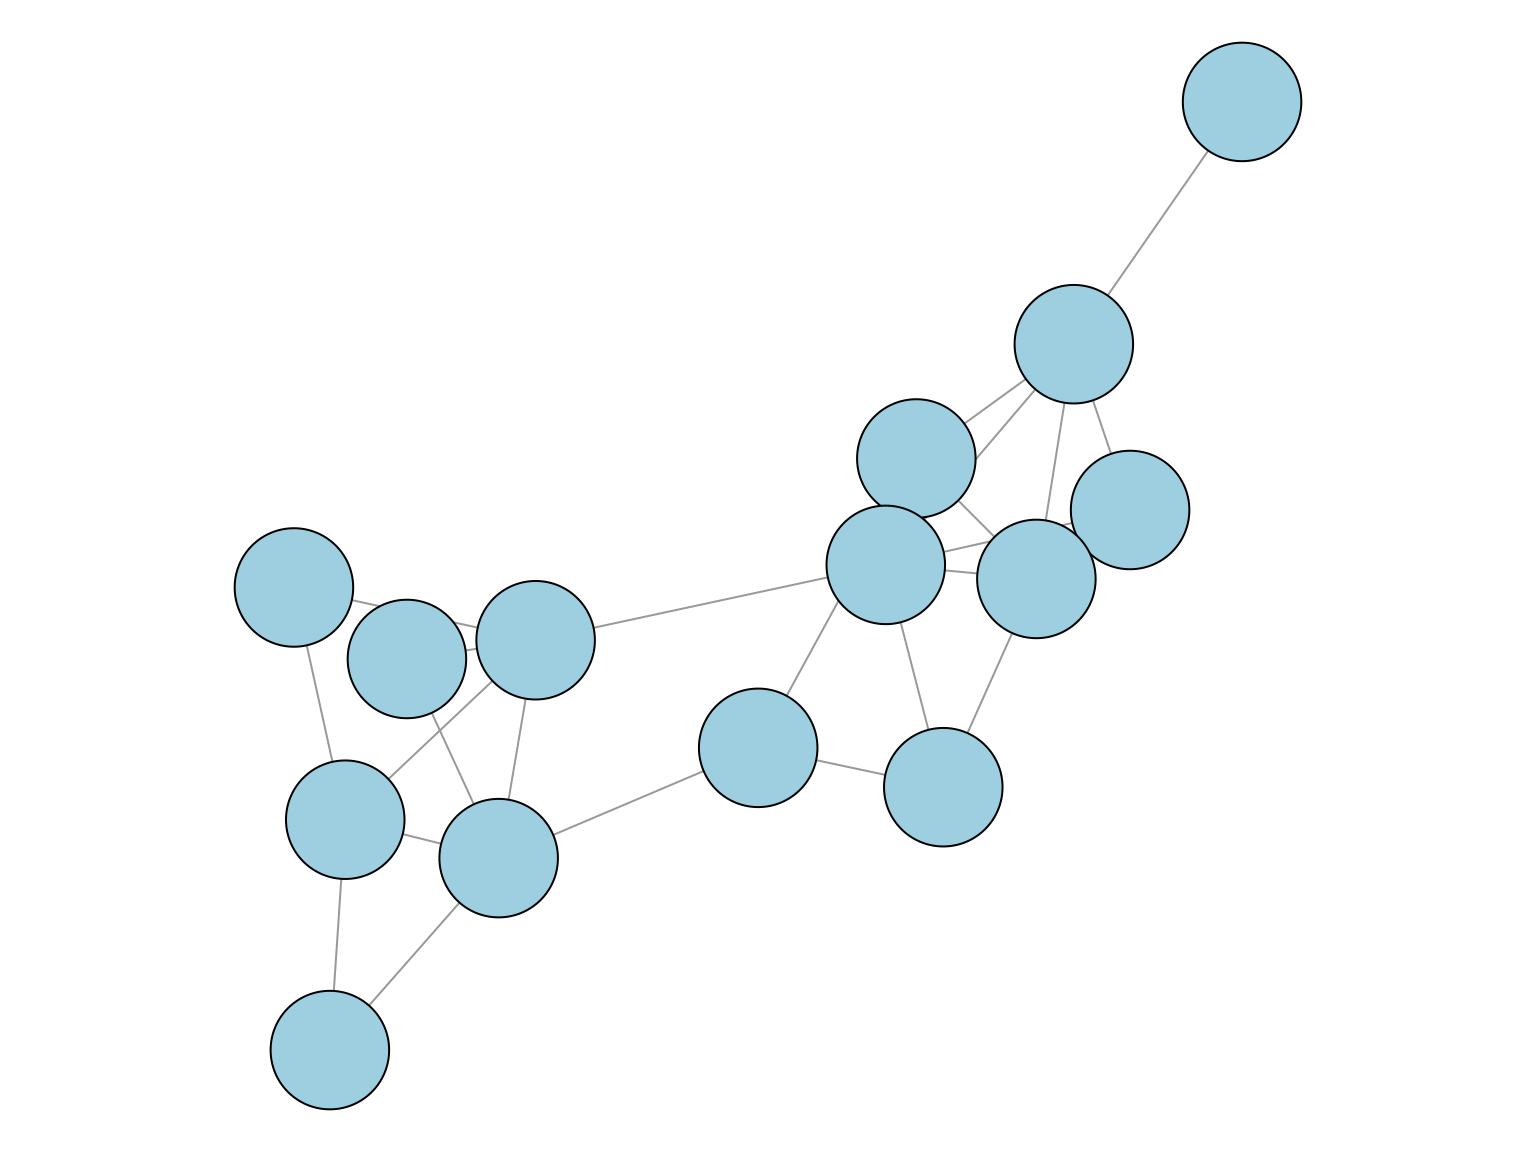 Graphe avec deux communautés et un noeud de degré 1.